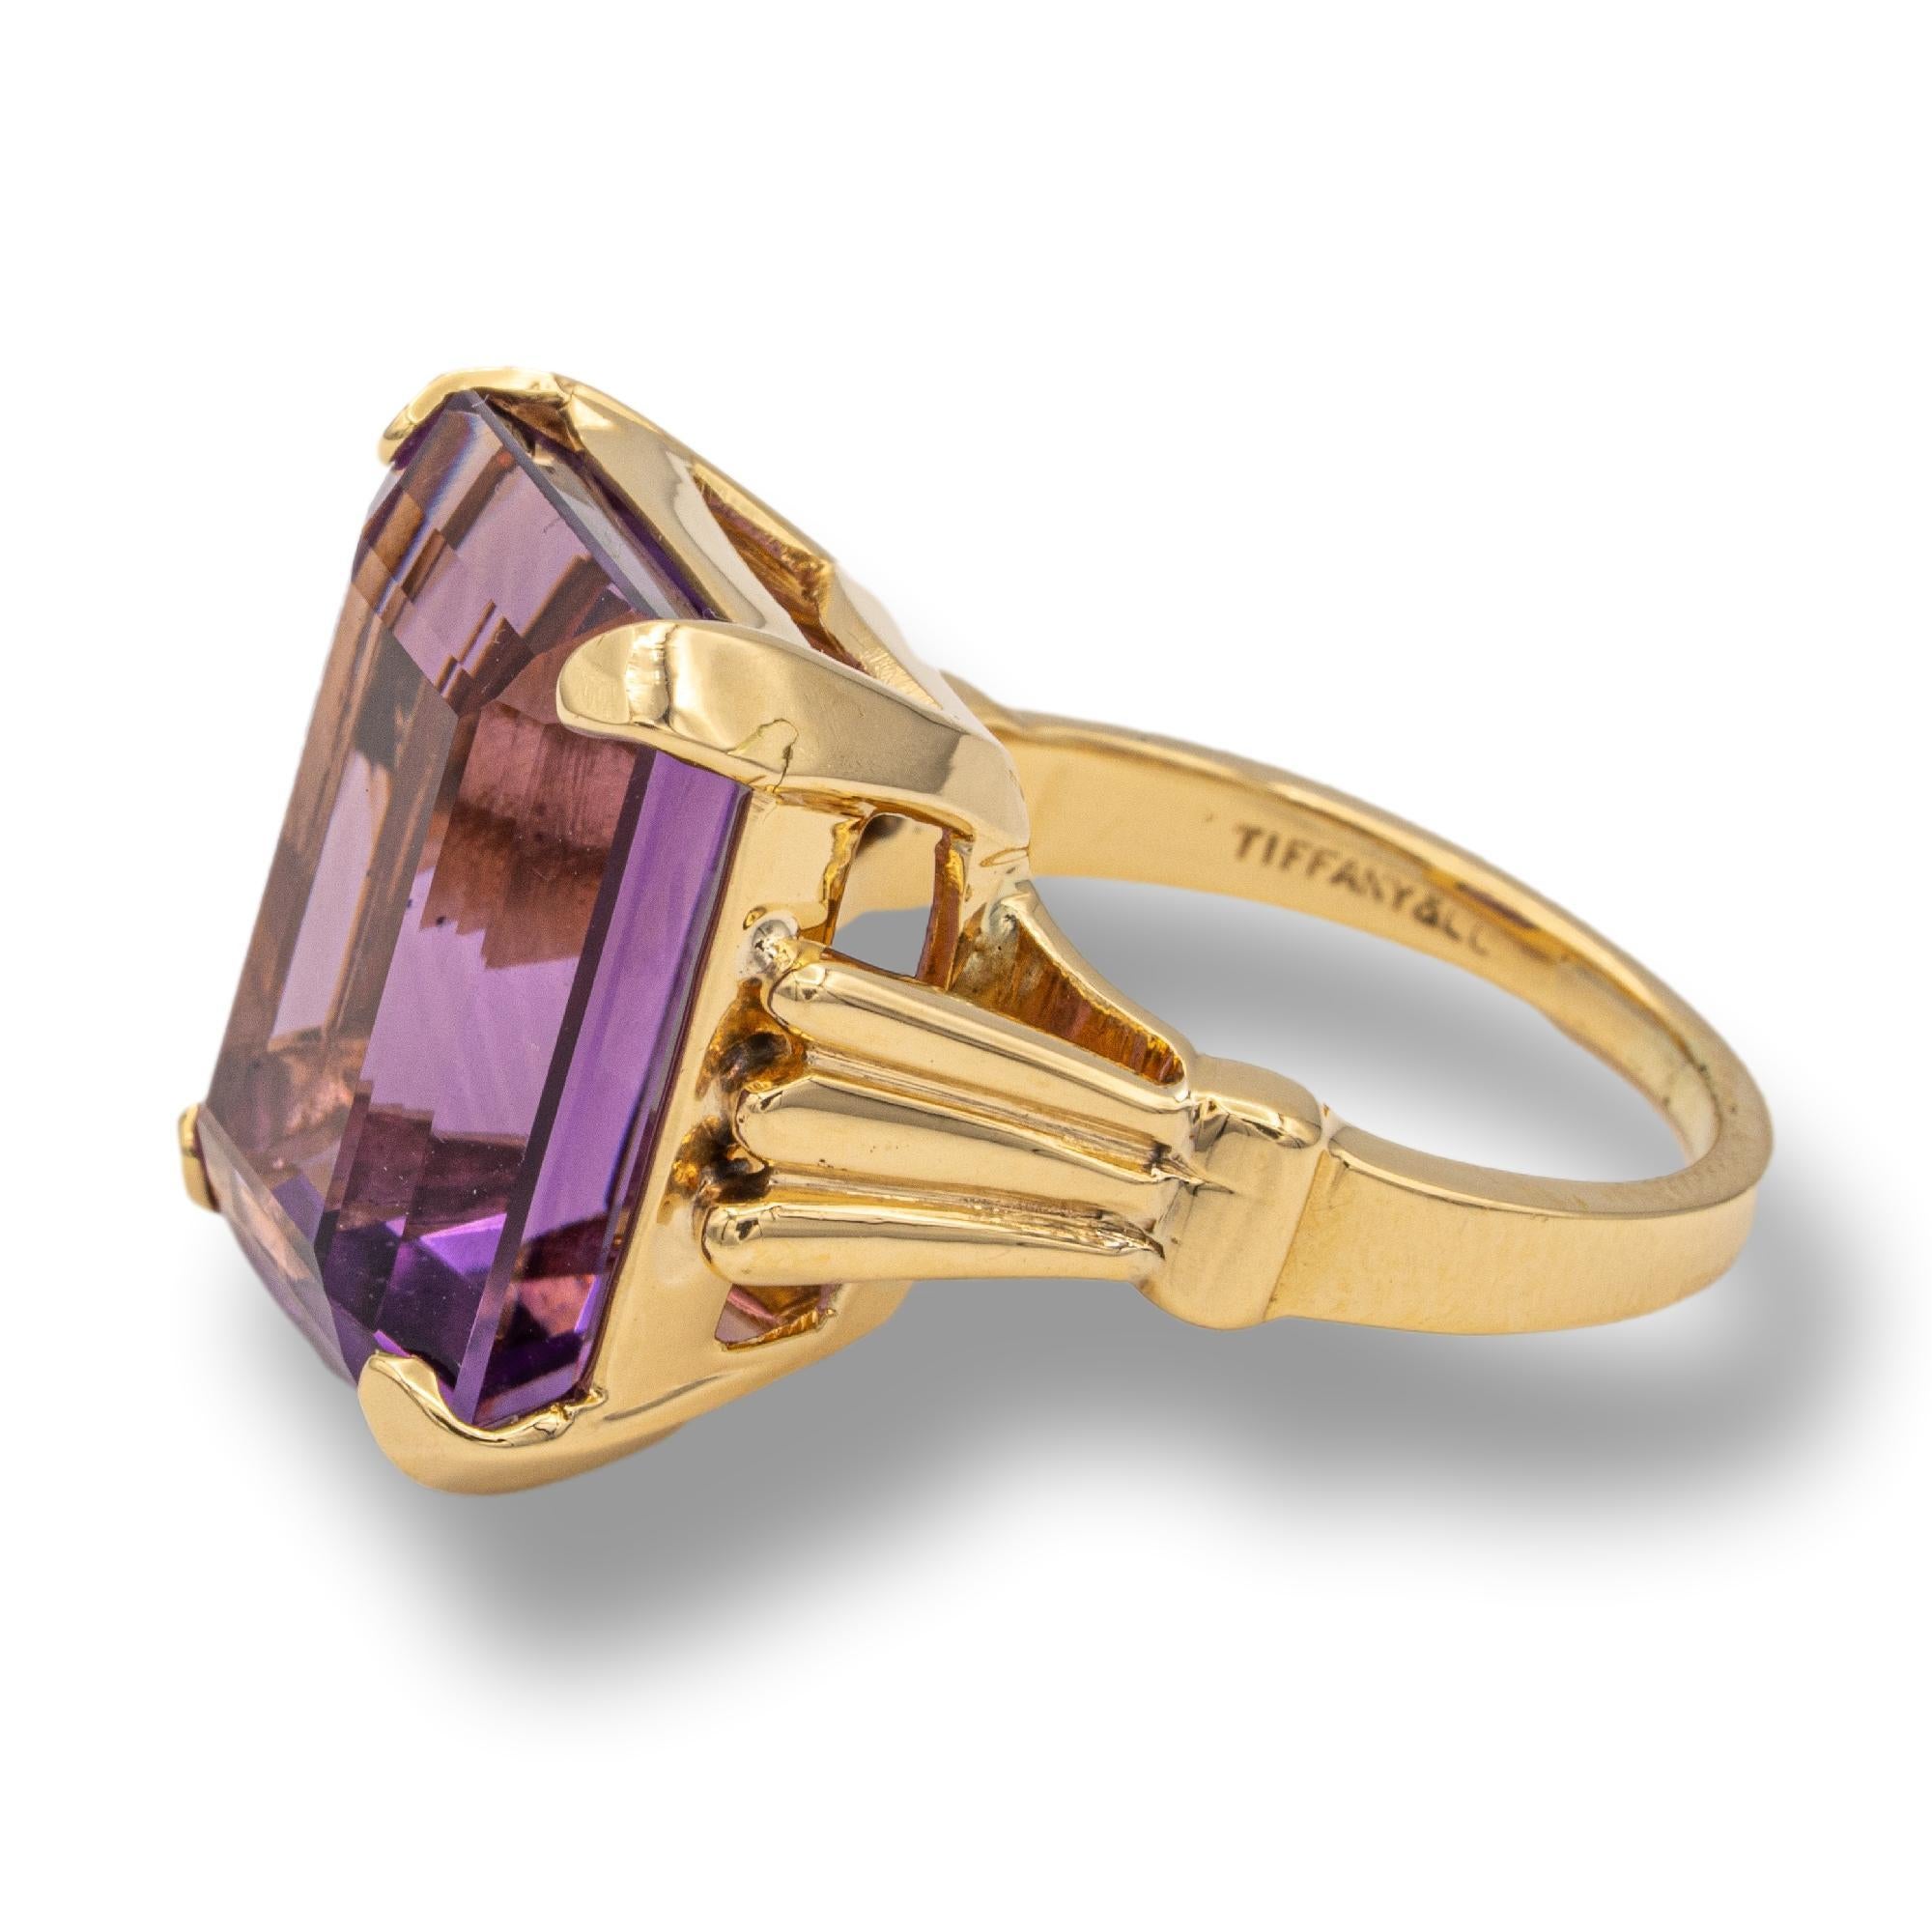 Ein zeitlos schönes Schmuckstück ist dieser Vintage-Ring von Tiffany & Co. mit einem großen Amethyst-Stein:: der in feiner Handarbeit aus 14-karätigem Gelbgold gefertigt wurde. 

Tragen Sie diesen Ring im Vintage-Stil:: um Ihrem Abendlook einen